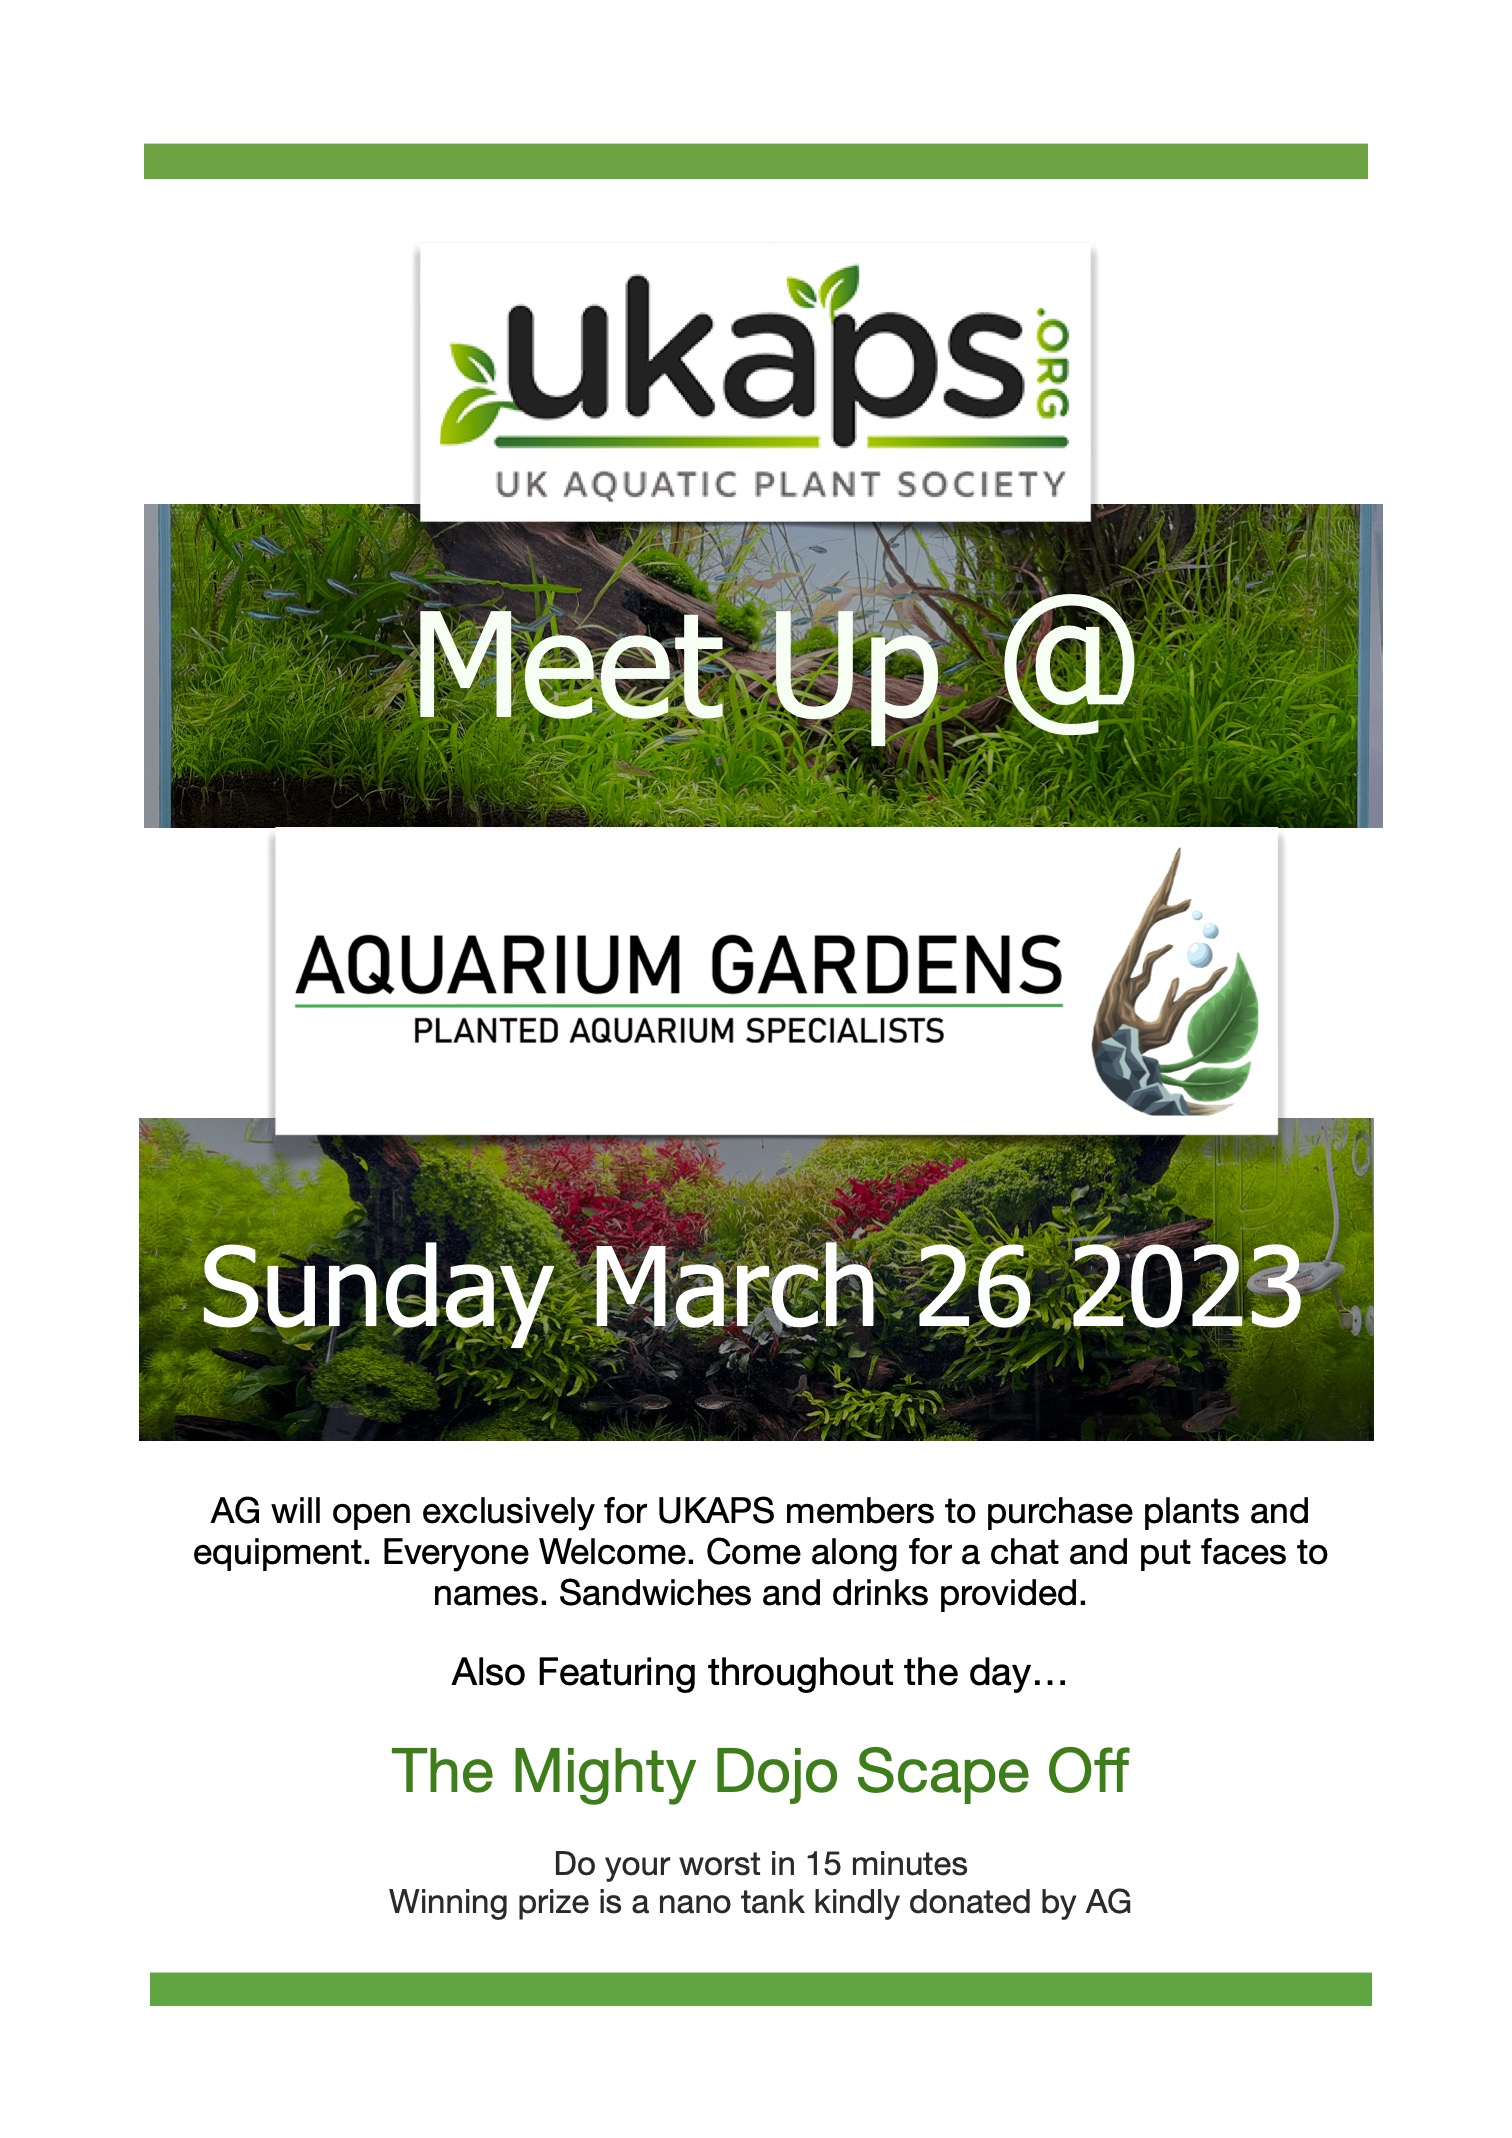 www.ukaps.org